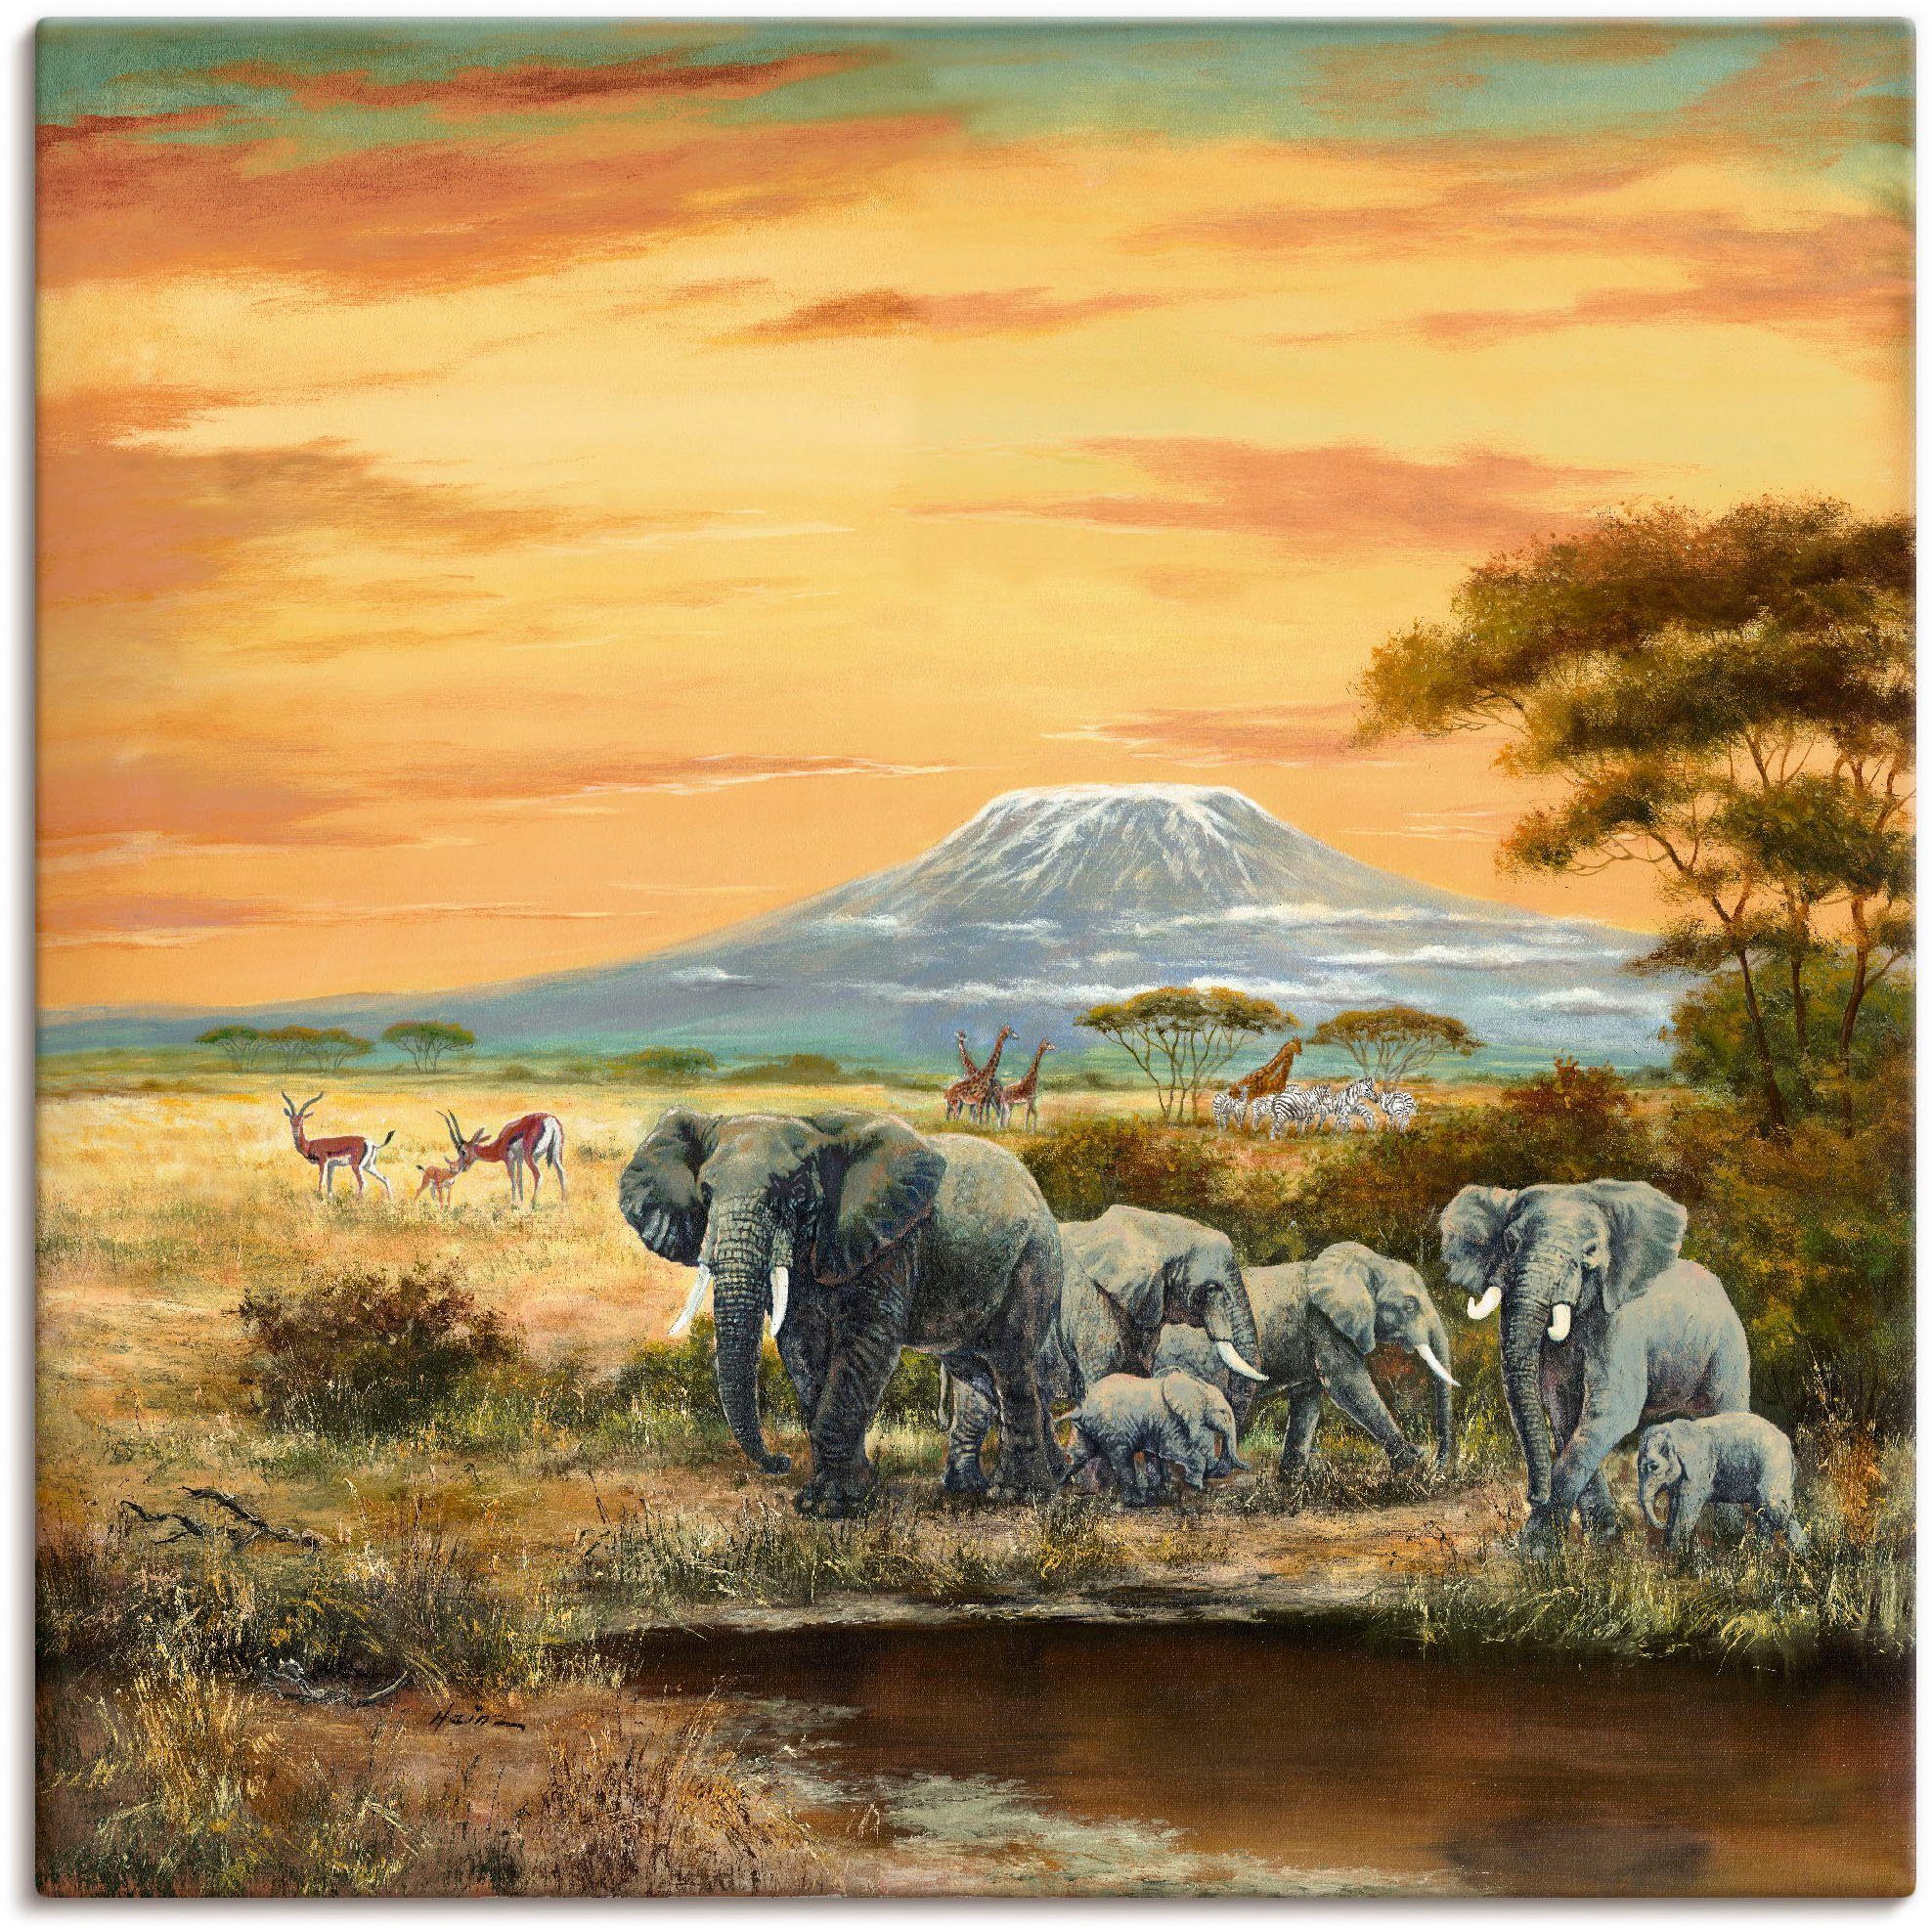 Artland Artprint Afrikaans landschap met olifanten in vele afmetingen & productsoorten - artprint van aluminium / artprint voor buiten, artprint op linnen, poster, muursticker / wa